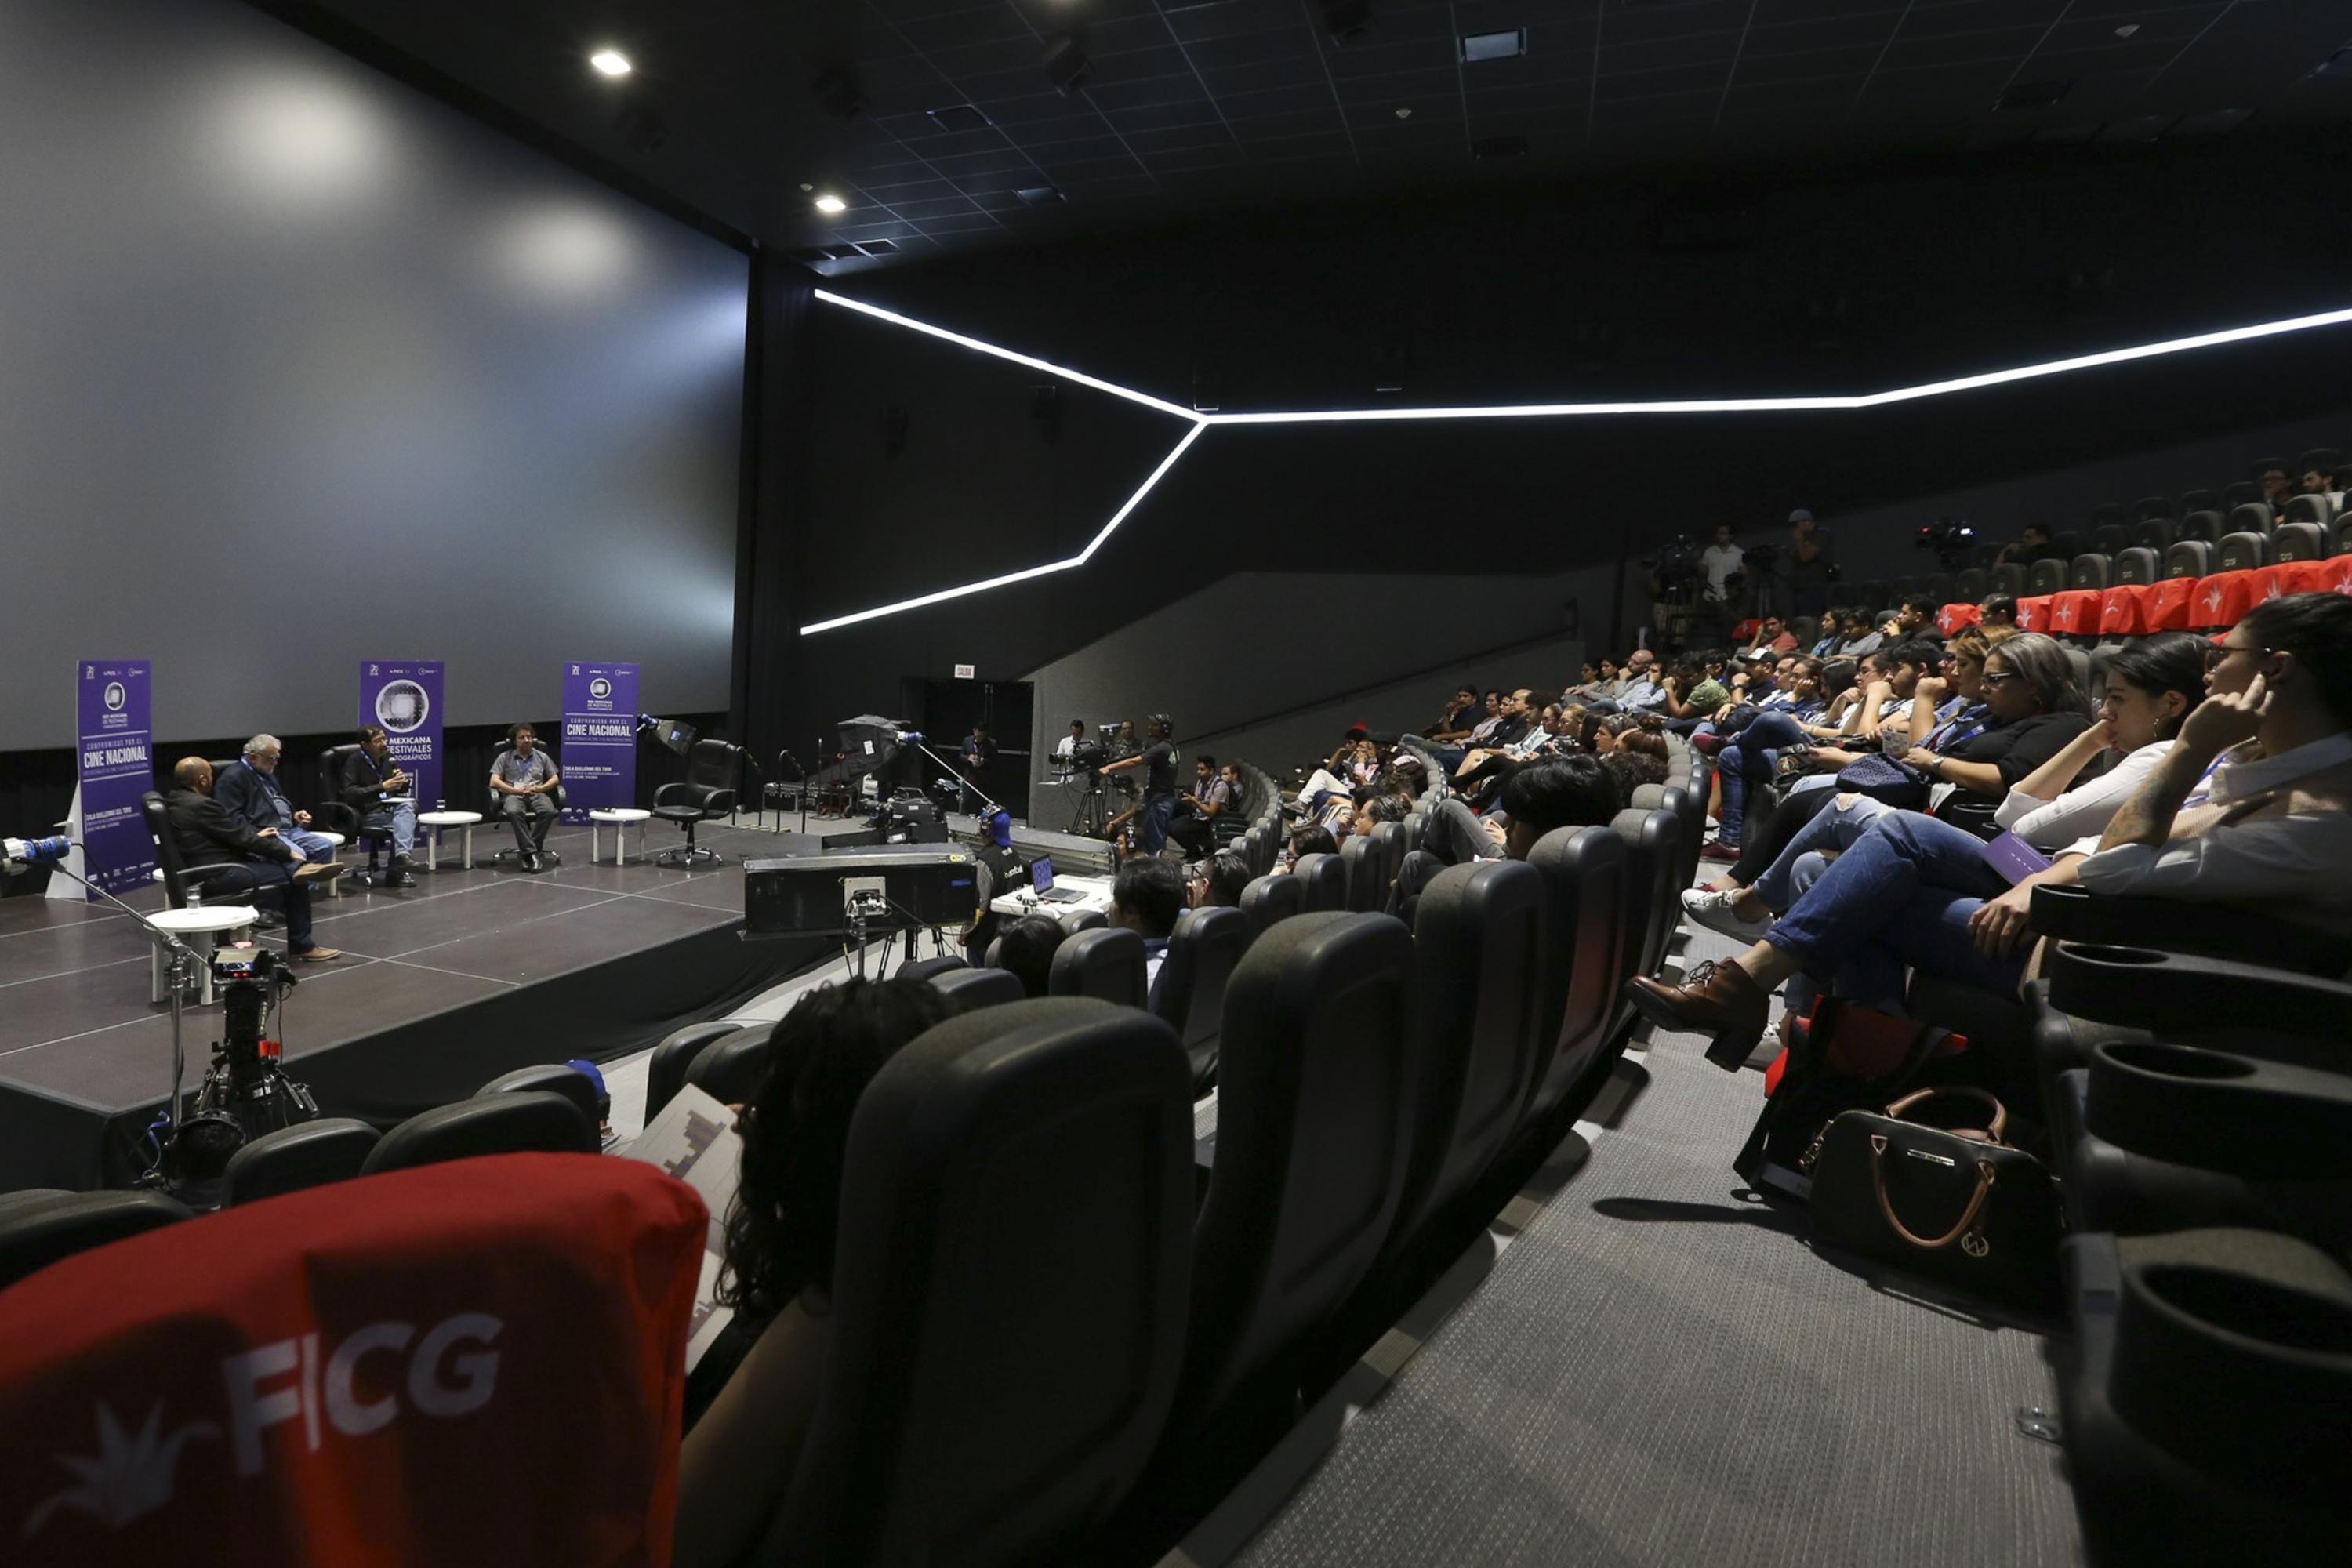 Vista desde la parte de atras de la sala Guillermo del Toro con el publico asistente a la conferencia